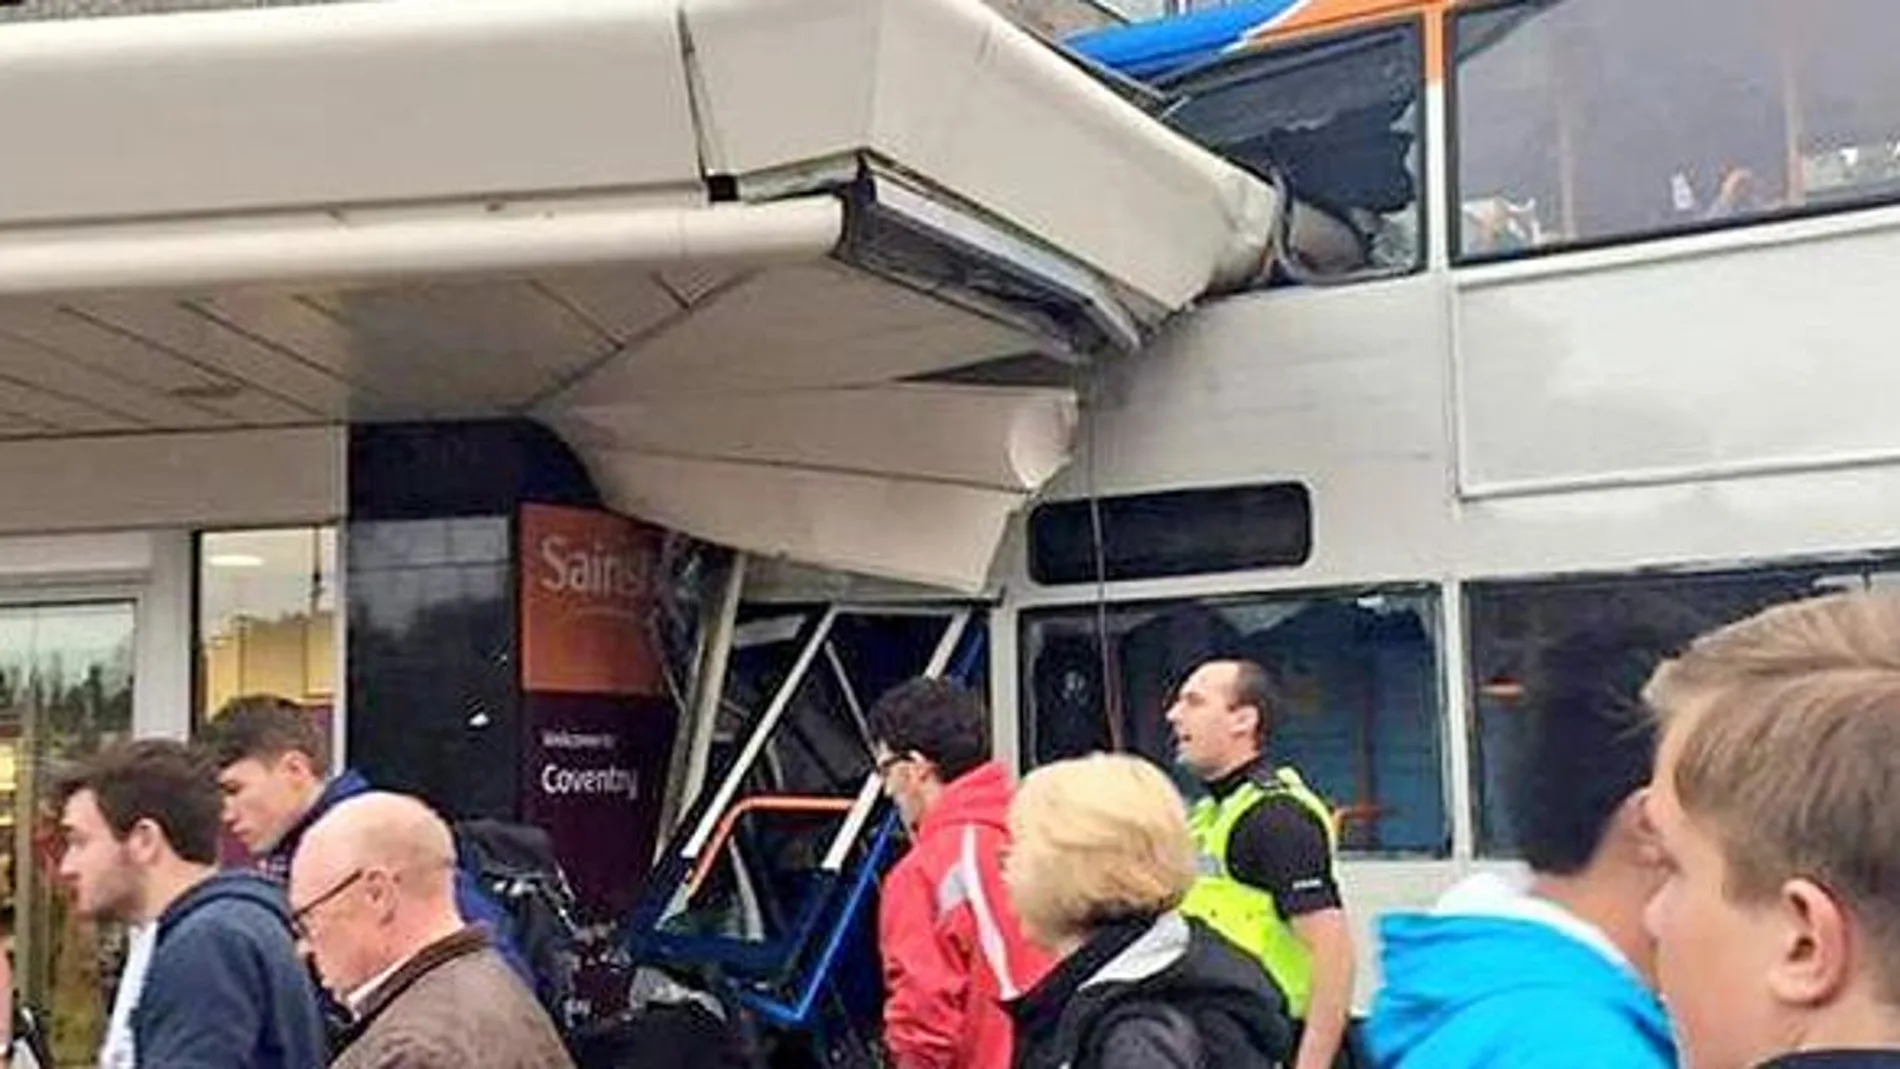 El autobús golpeó diversos coches y una farola antes de estrellarse contra el supermercado.